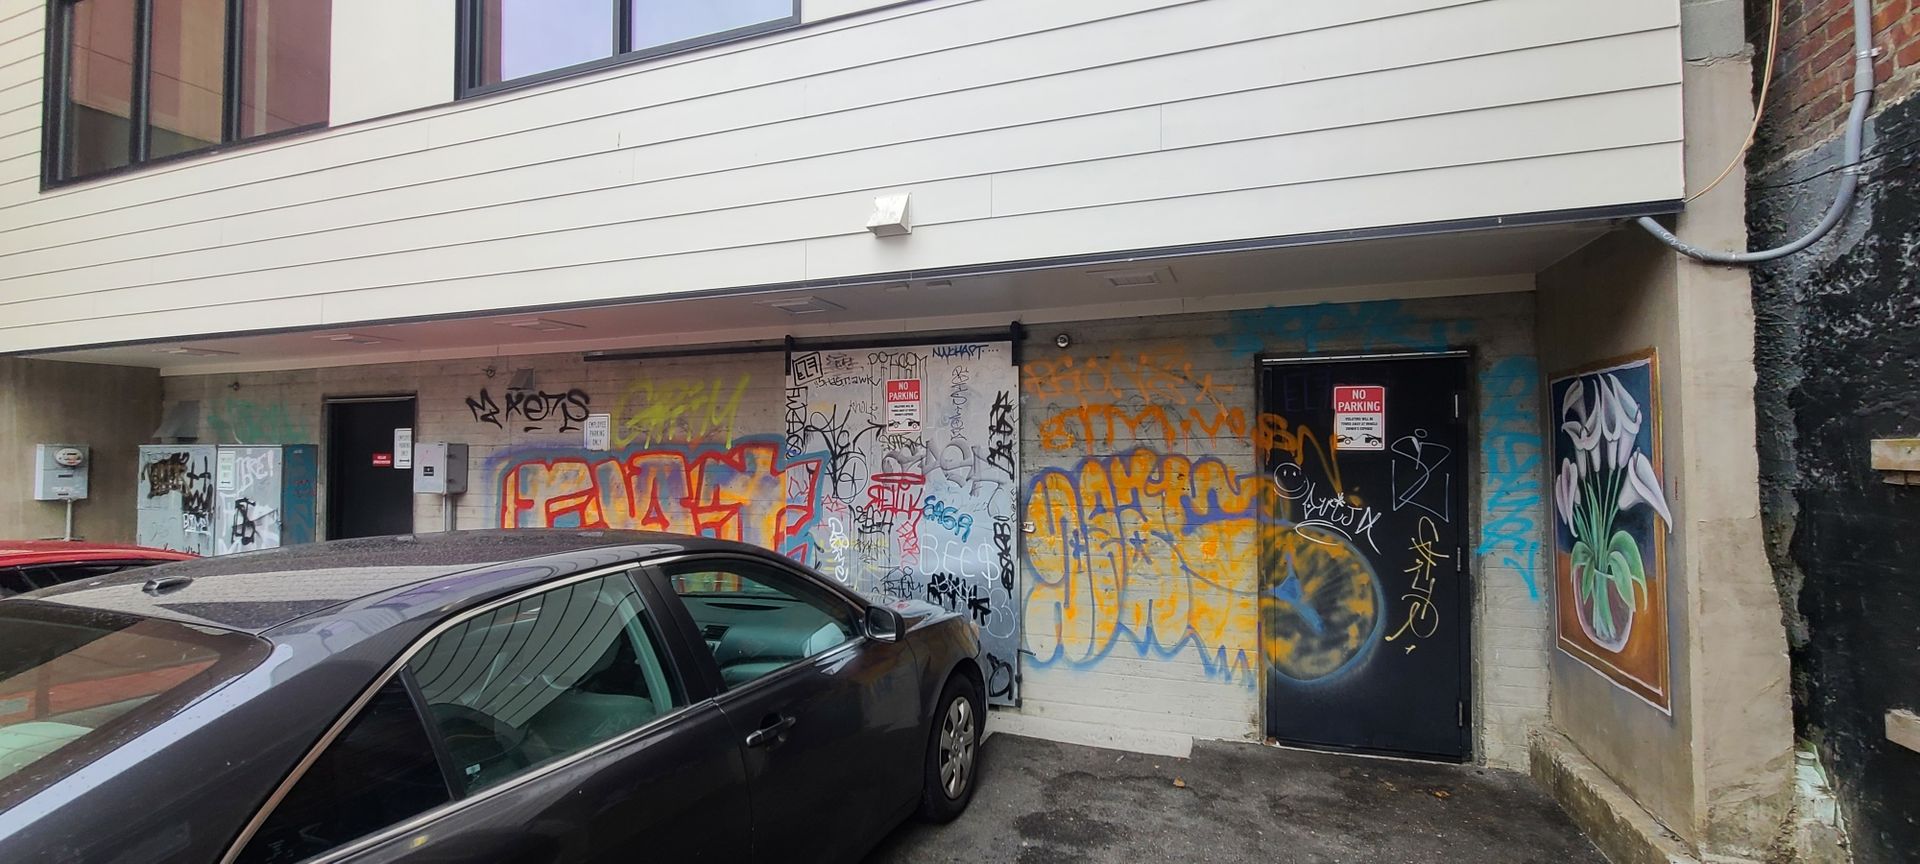 Wall with Graffiti - Seattle, WA - ASAP Graffiti Removal